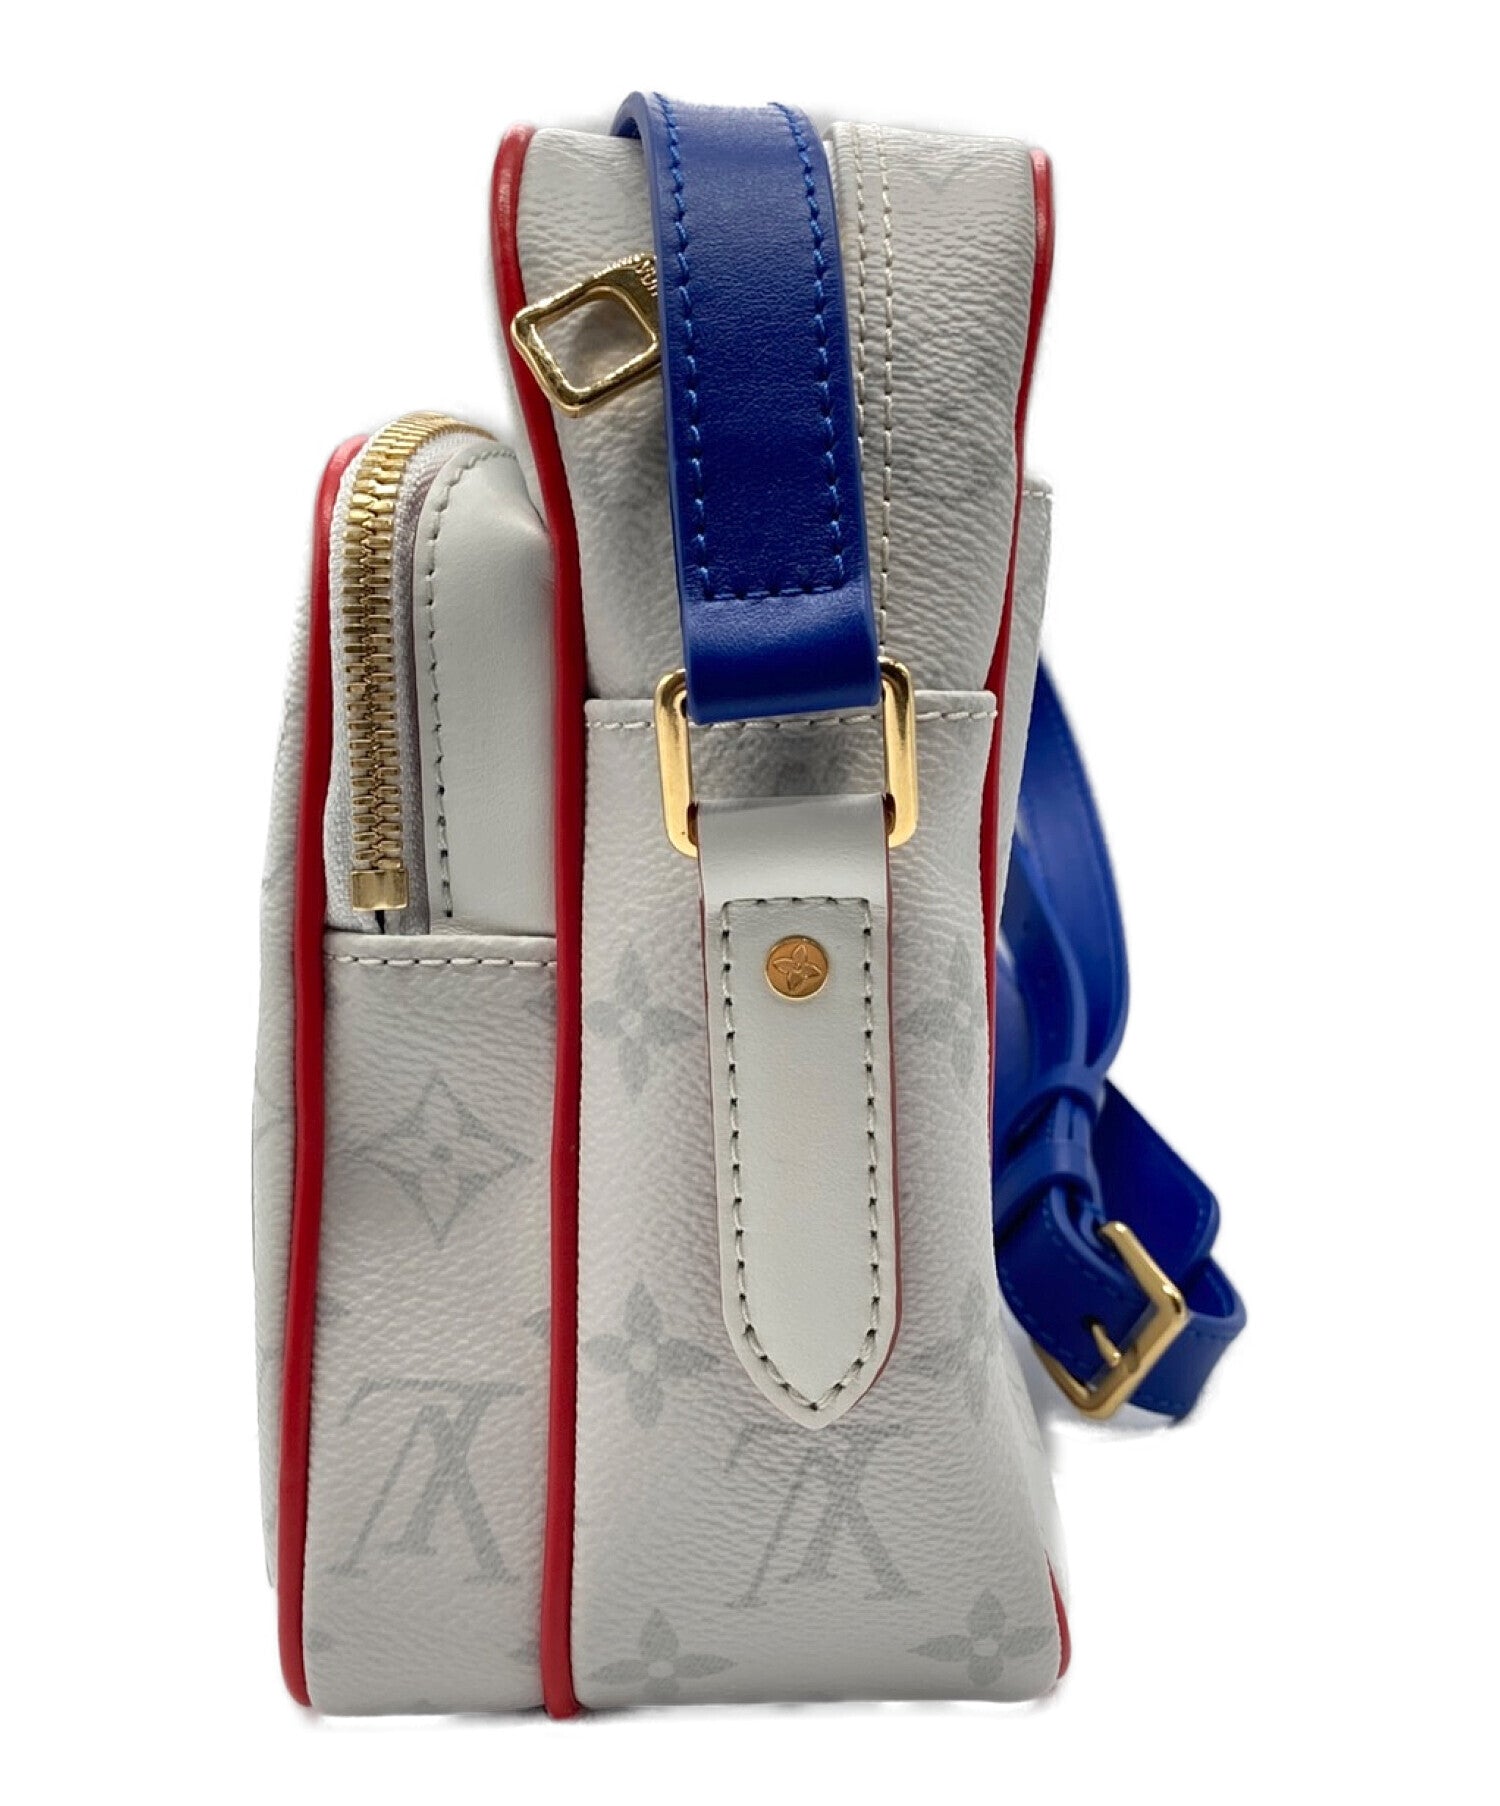 Louis Vuitton LV x NBA Nil Messenger Bag